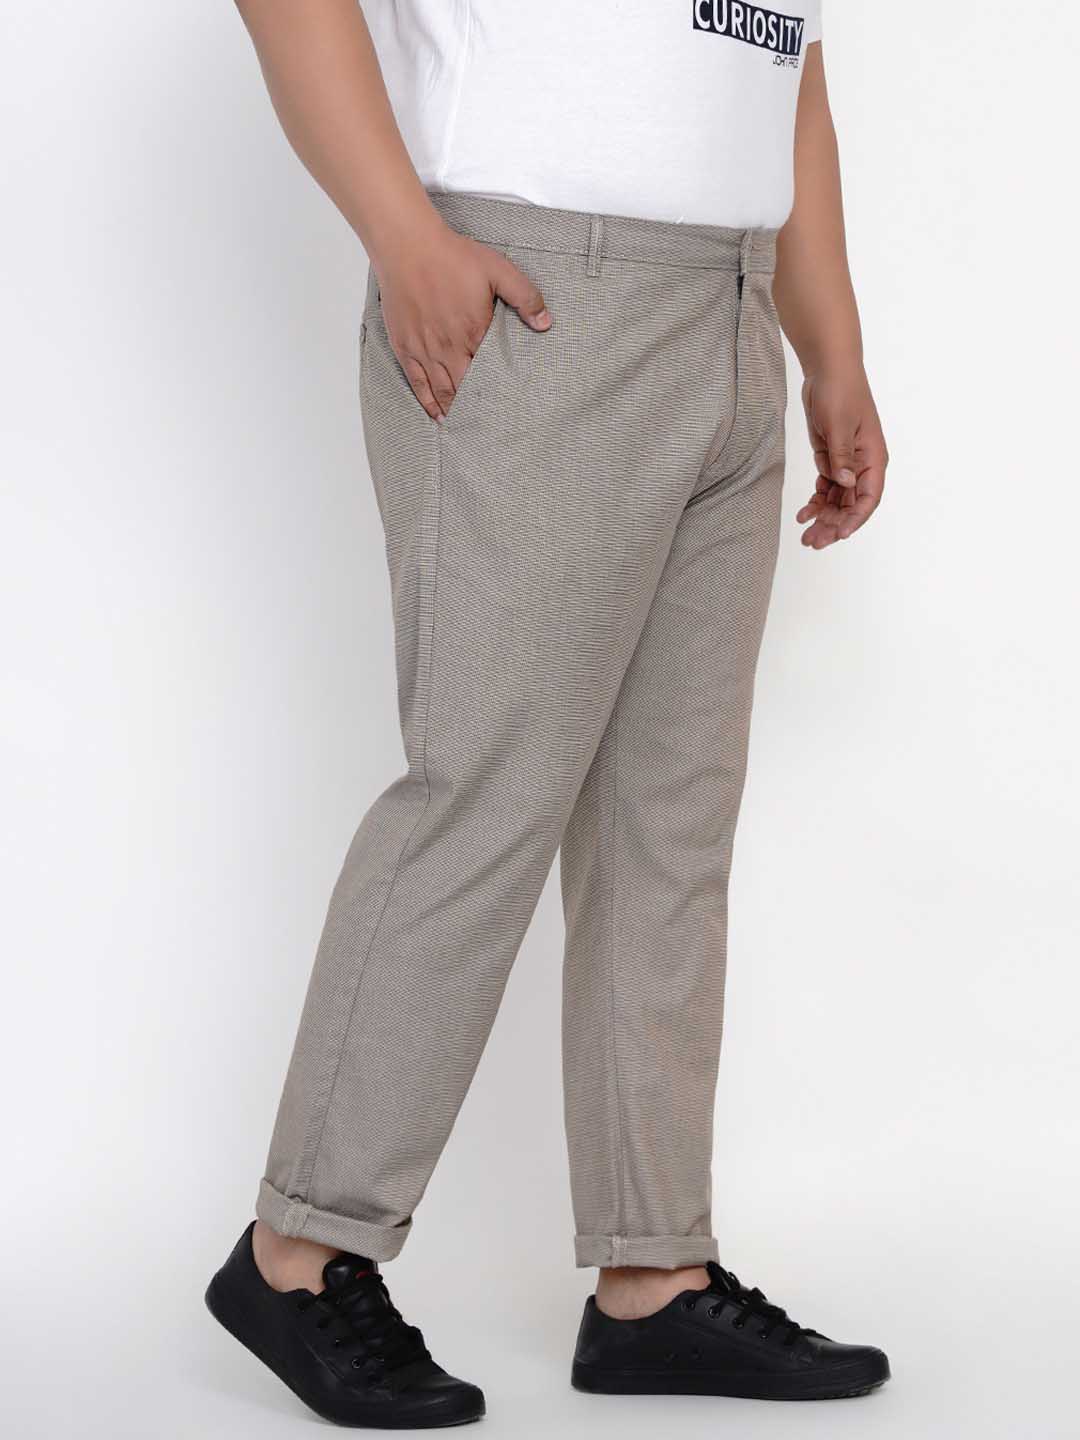 bottomwear/trousers/JPTR2145C/jptr2145c-5.jpg